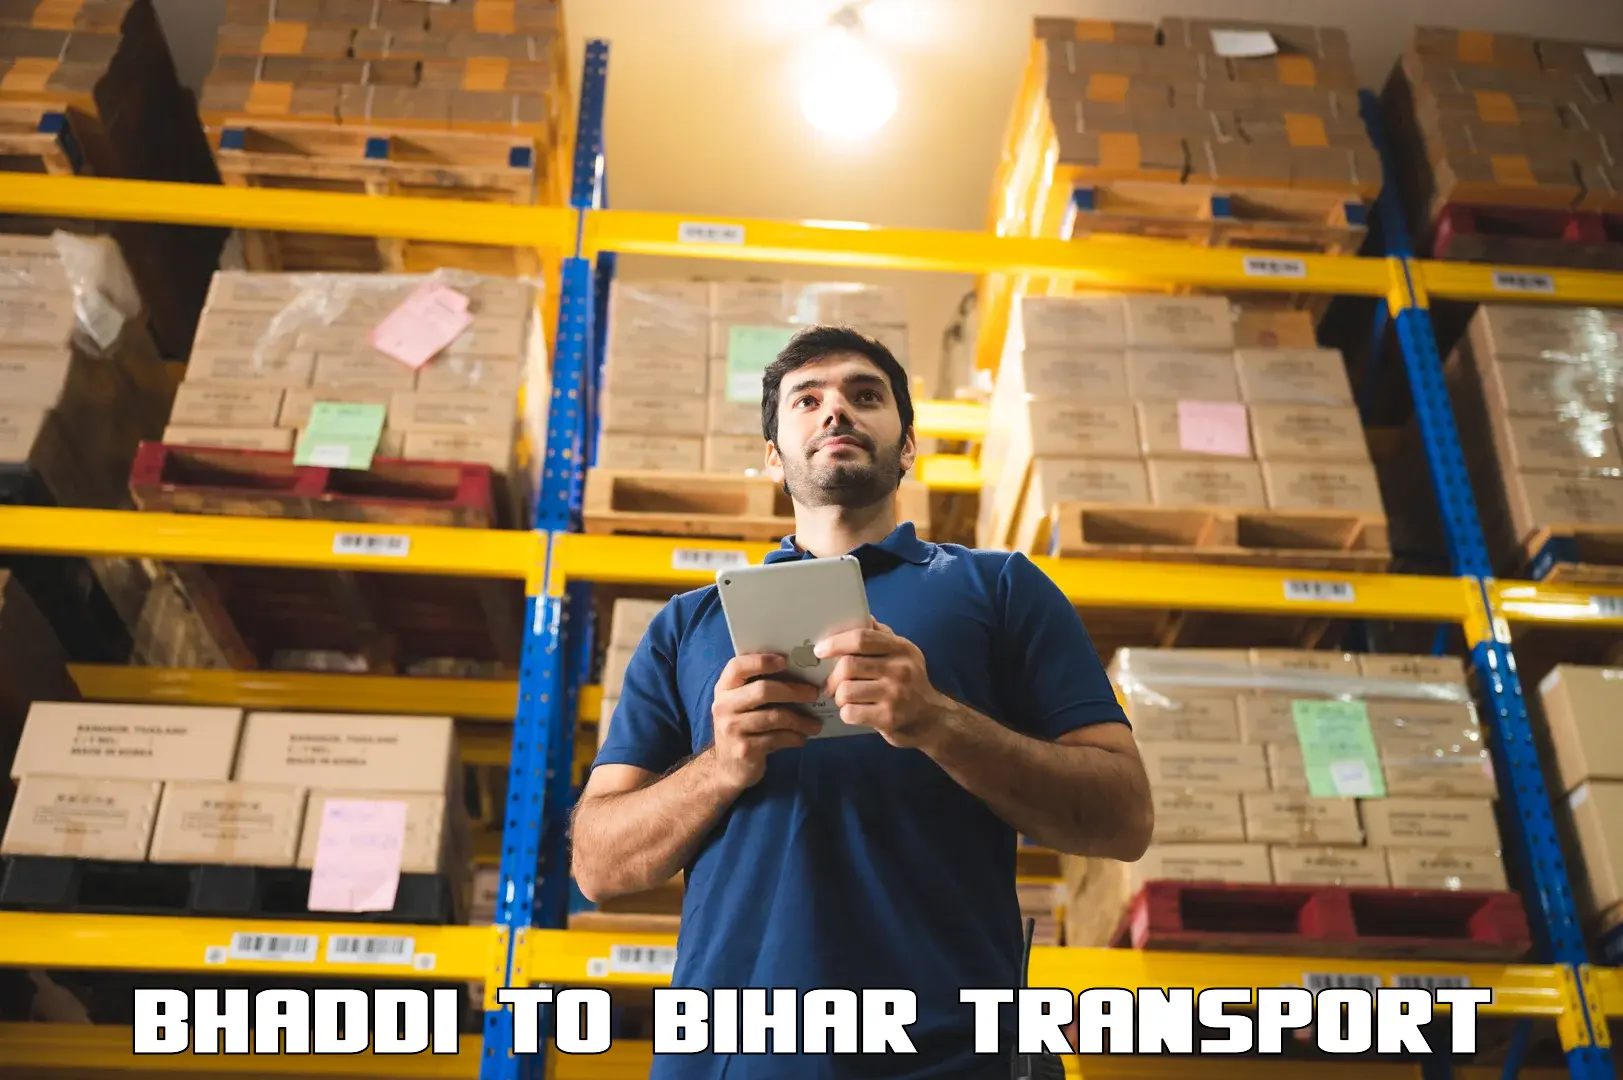 Nearest transport service Bhaddi to Chakai